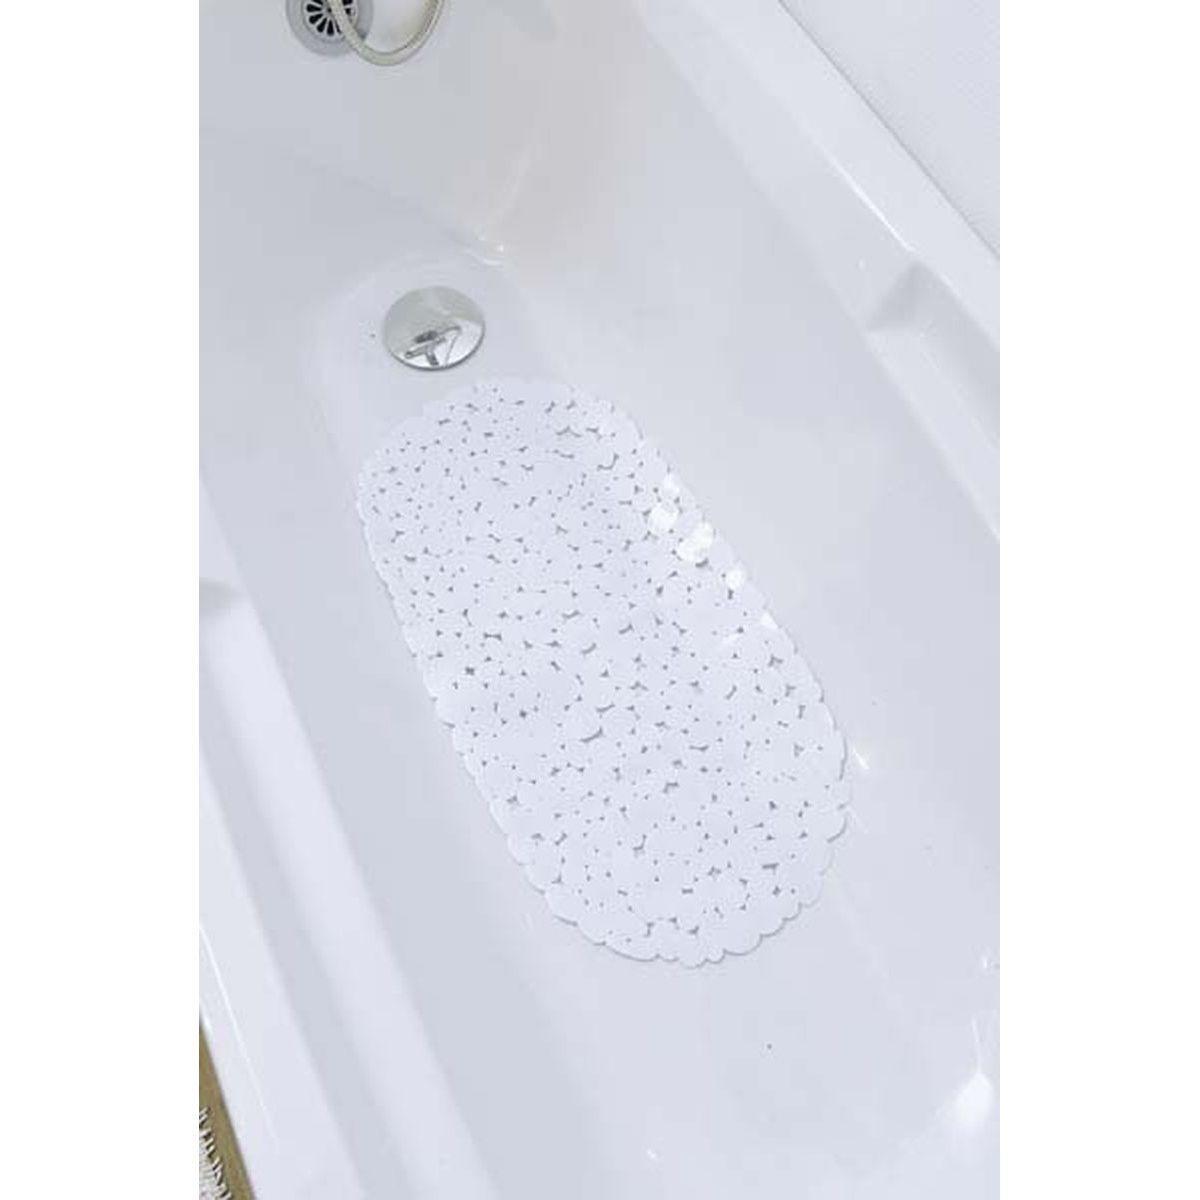 Fond de baignoire - L 69 x l 36 cm - Blanc